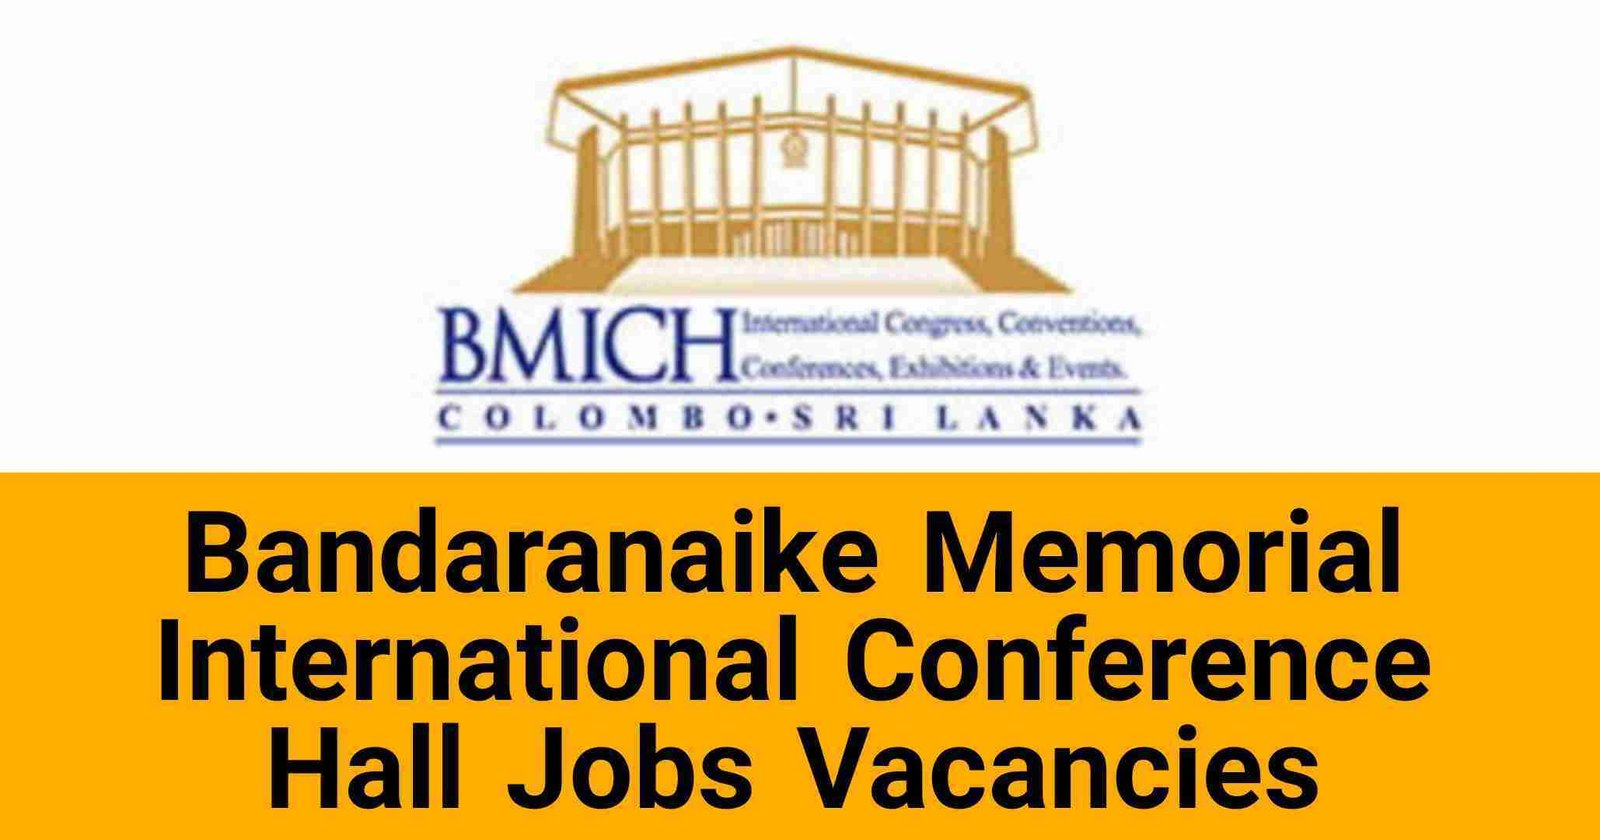 Bandaranaike Memorial International Conference Hall Jobs Vacancies